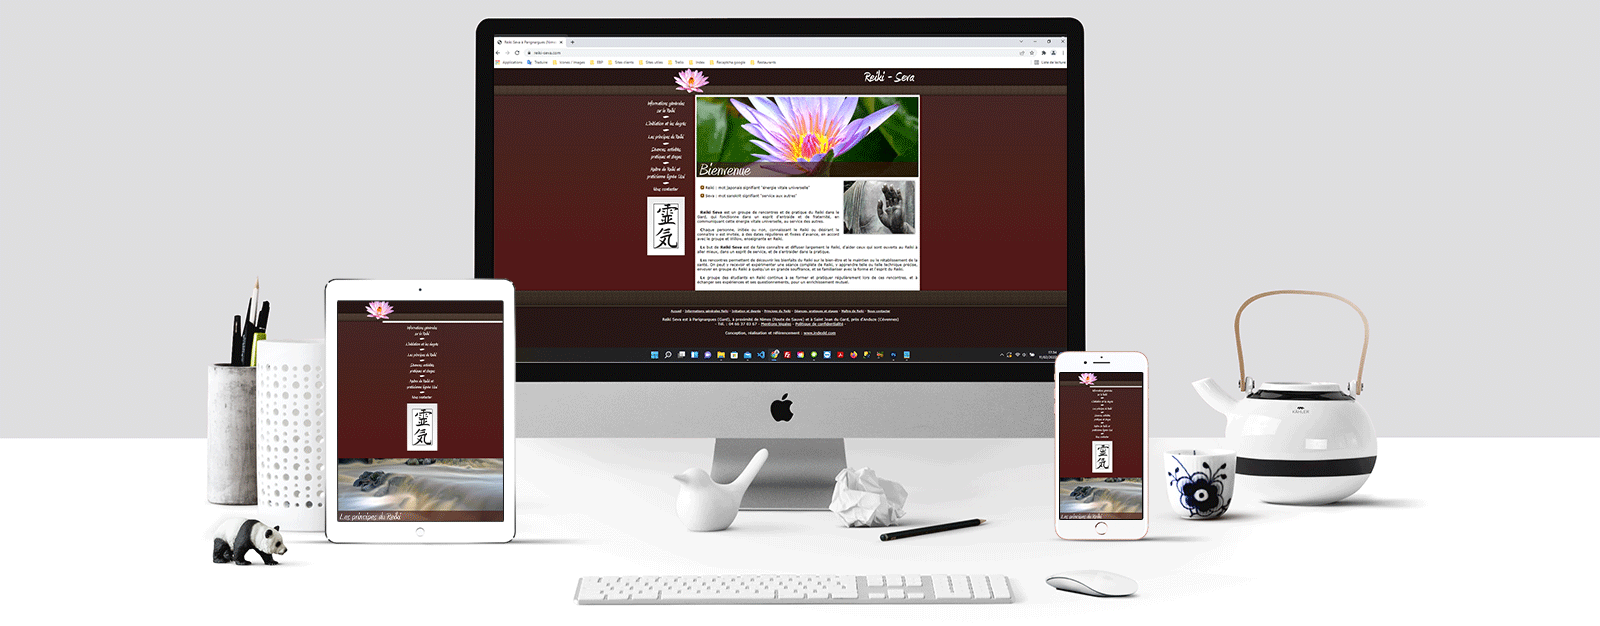 Le site Reiki Seva sur un écran Mac, un écran de tablette et un écran d'Iphone